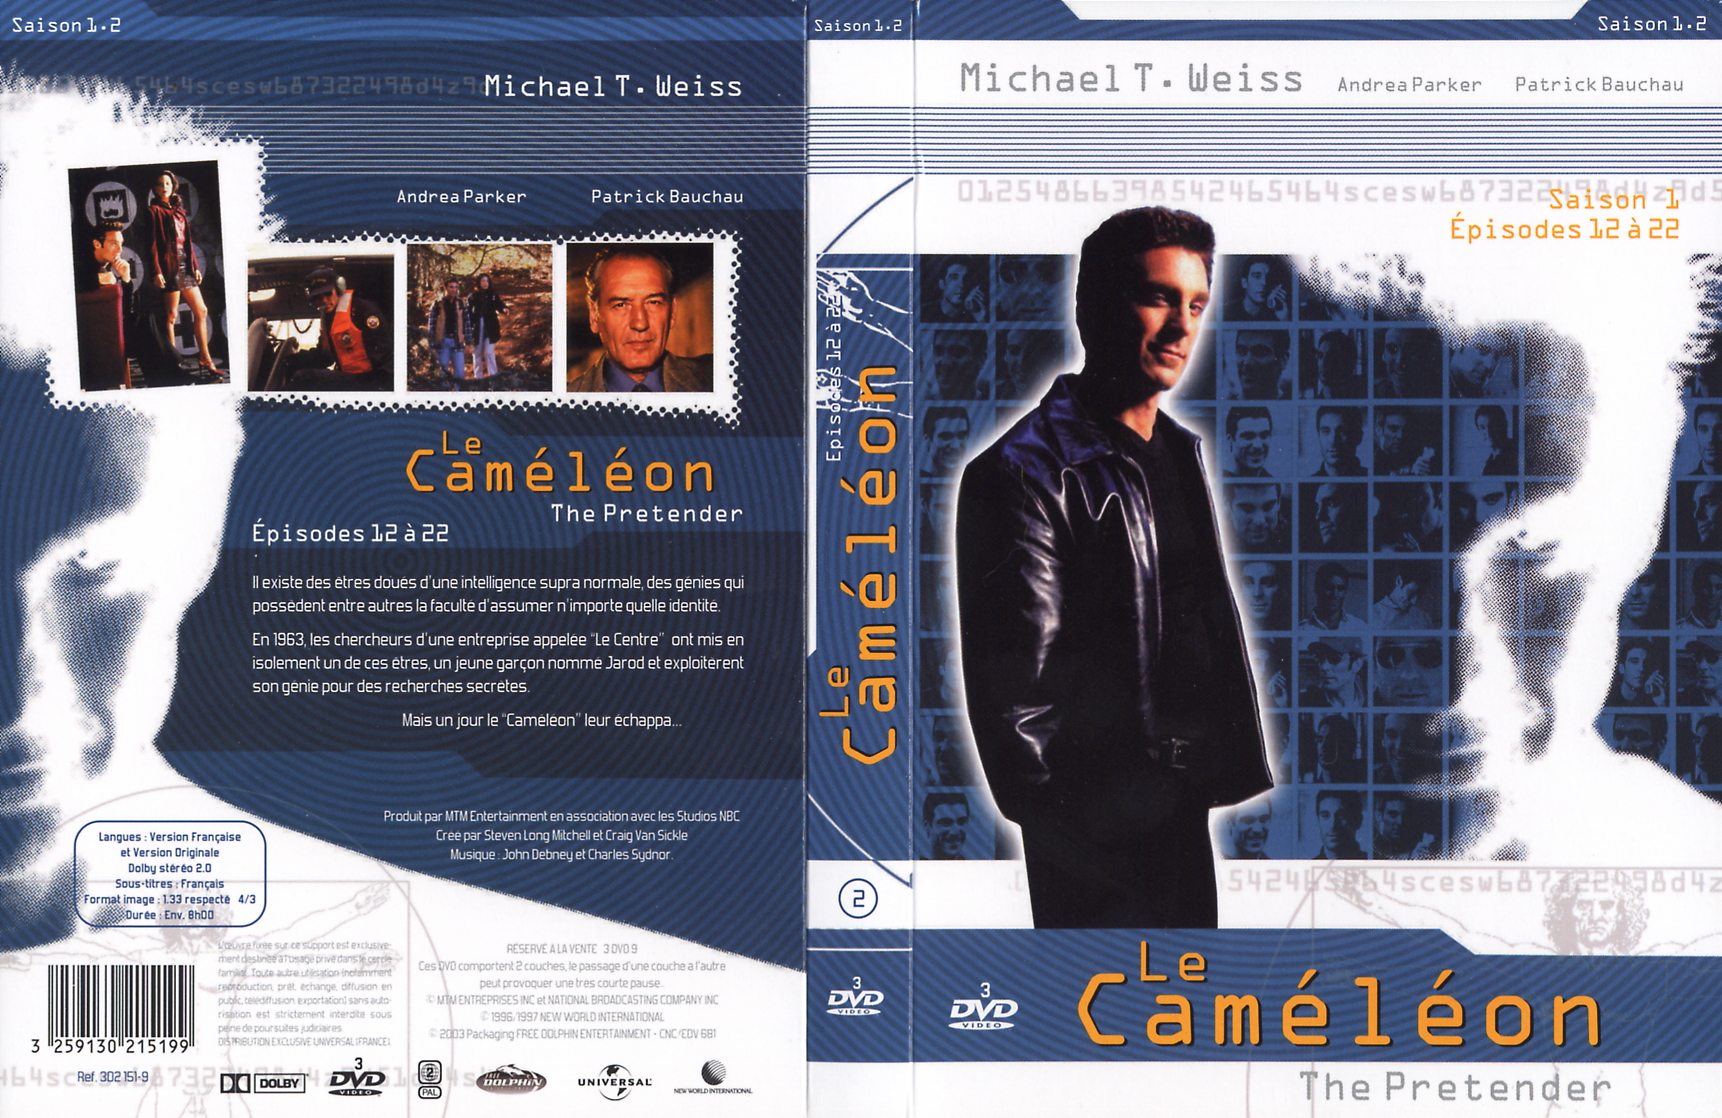 Jaquette DVD Le camlon saison 1 vol 2